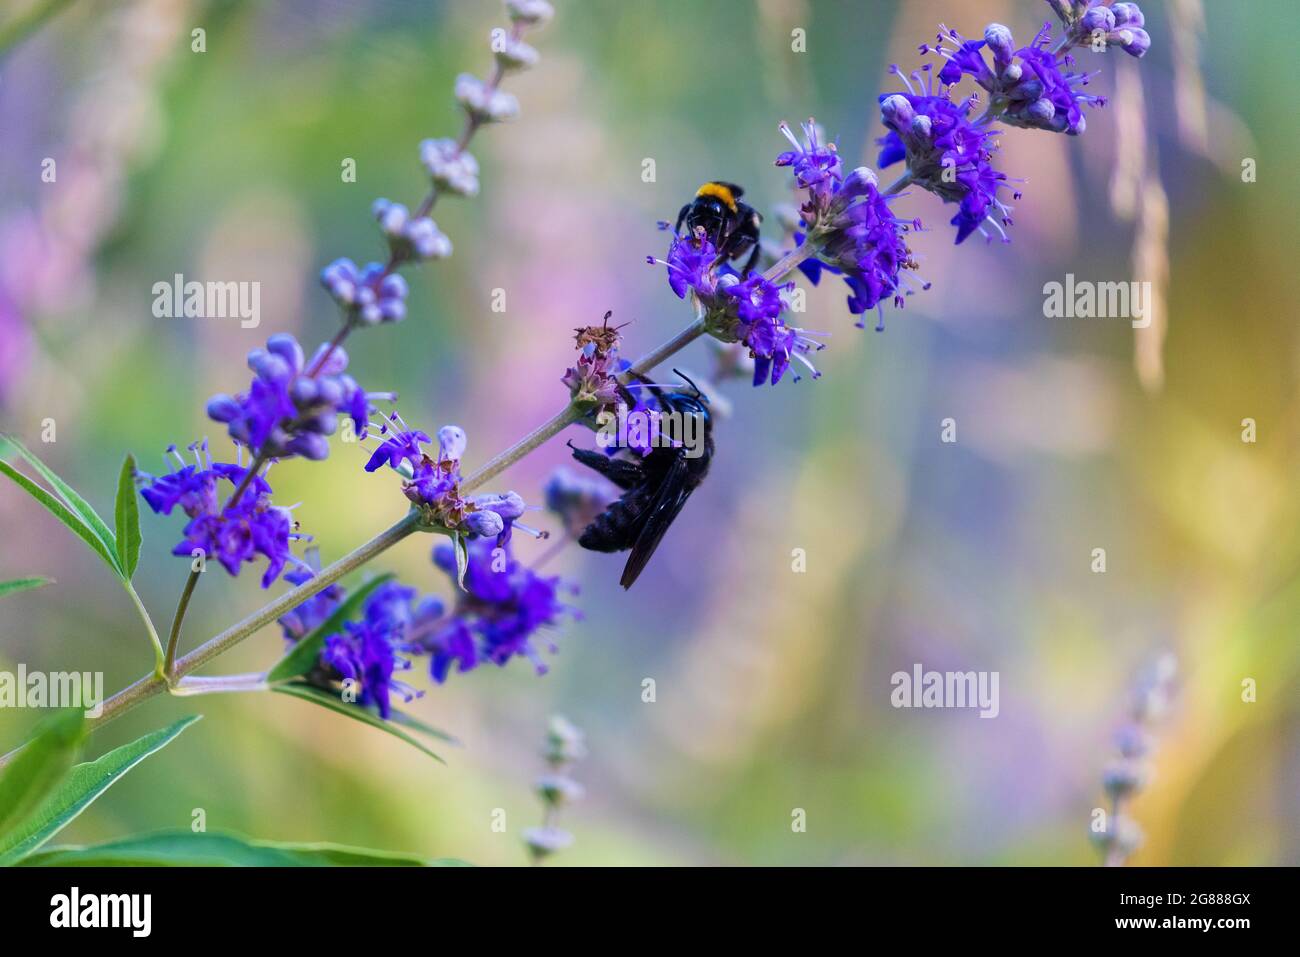 Xylocopa violacea, la abeja carpintero violeta en las flores de Vitex agnus-castus, también llamada vitex, árbol casto Foto de stock